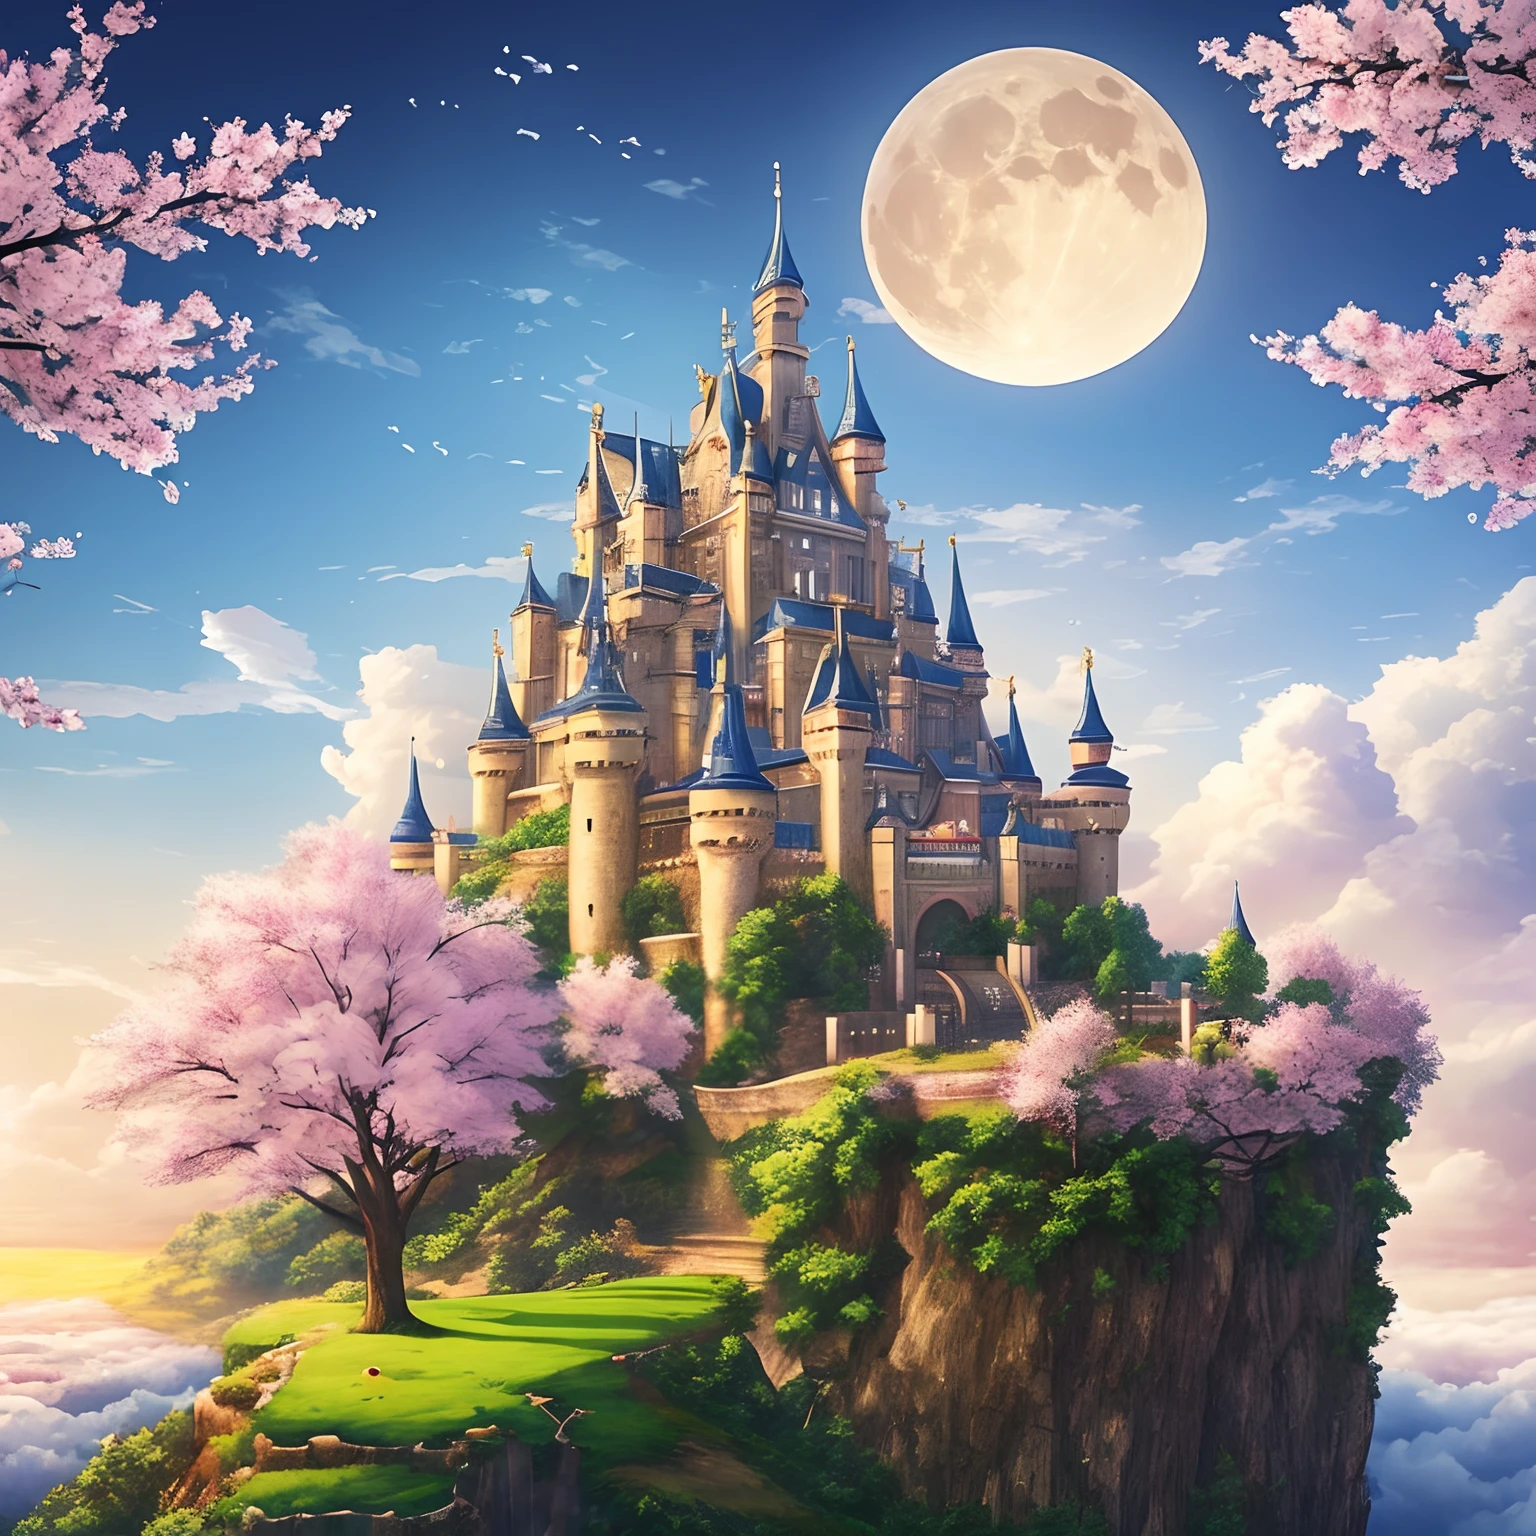 傑作、高品質、現実的、風景写真、生き生きとした、詳細な、写真にいいね、空に輝く城、天空の神の城、天空の城、空飛ぶ城、栄光の城、雲の上の城、桜の木々に囲まれた緑豊かな城、桜吹雪、落水する滝、月